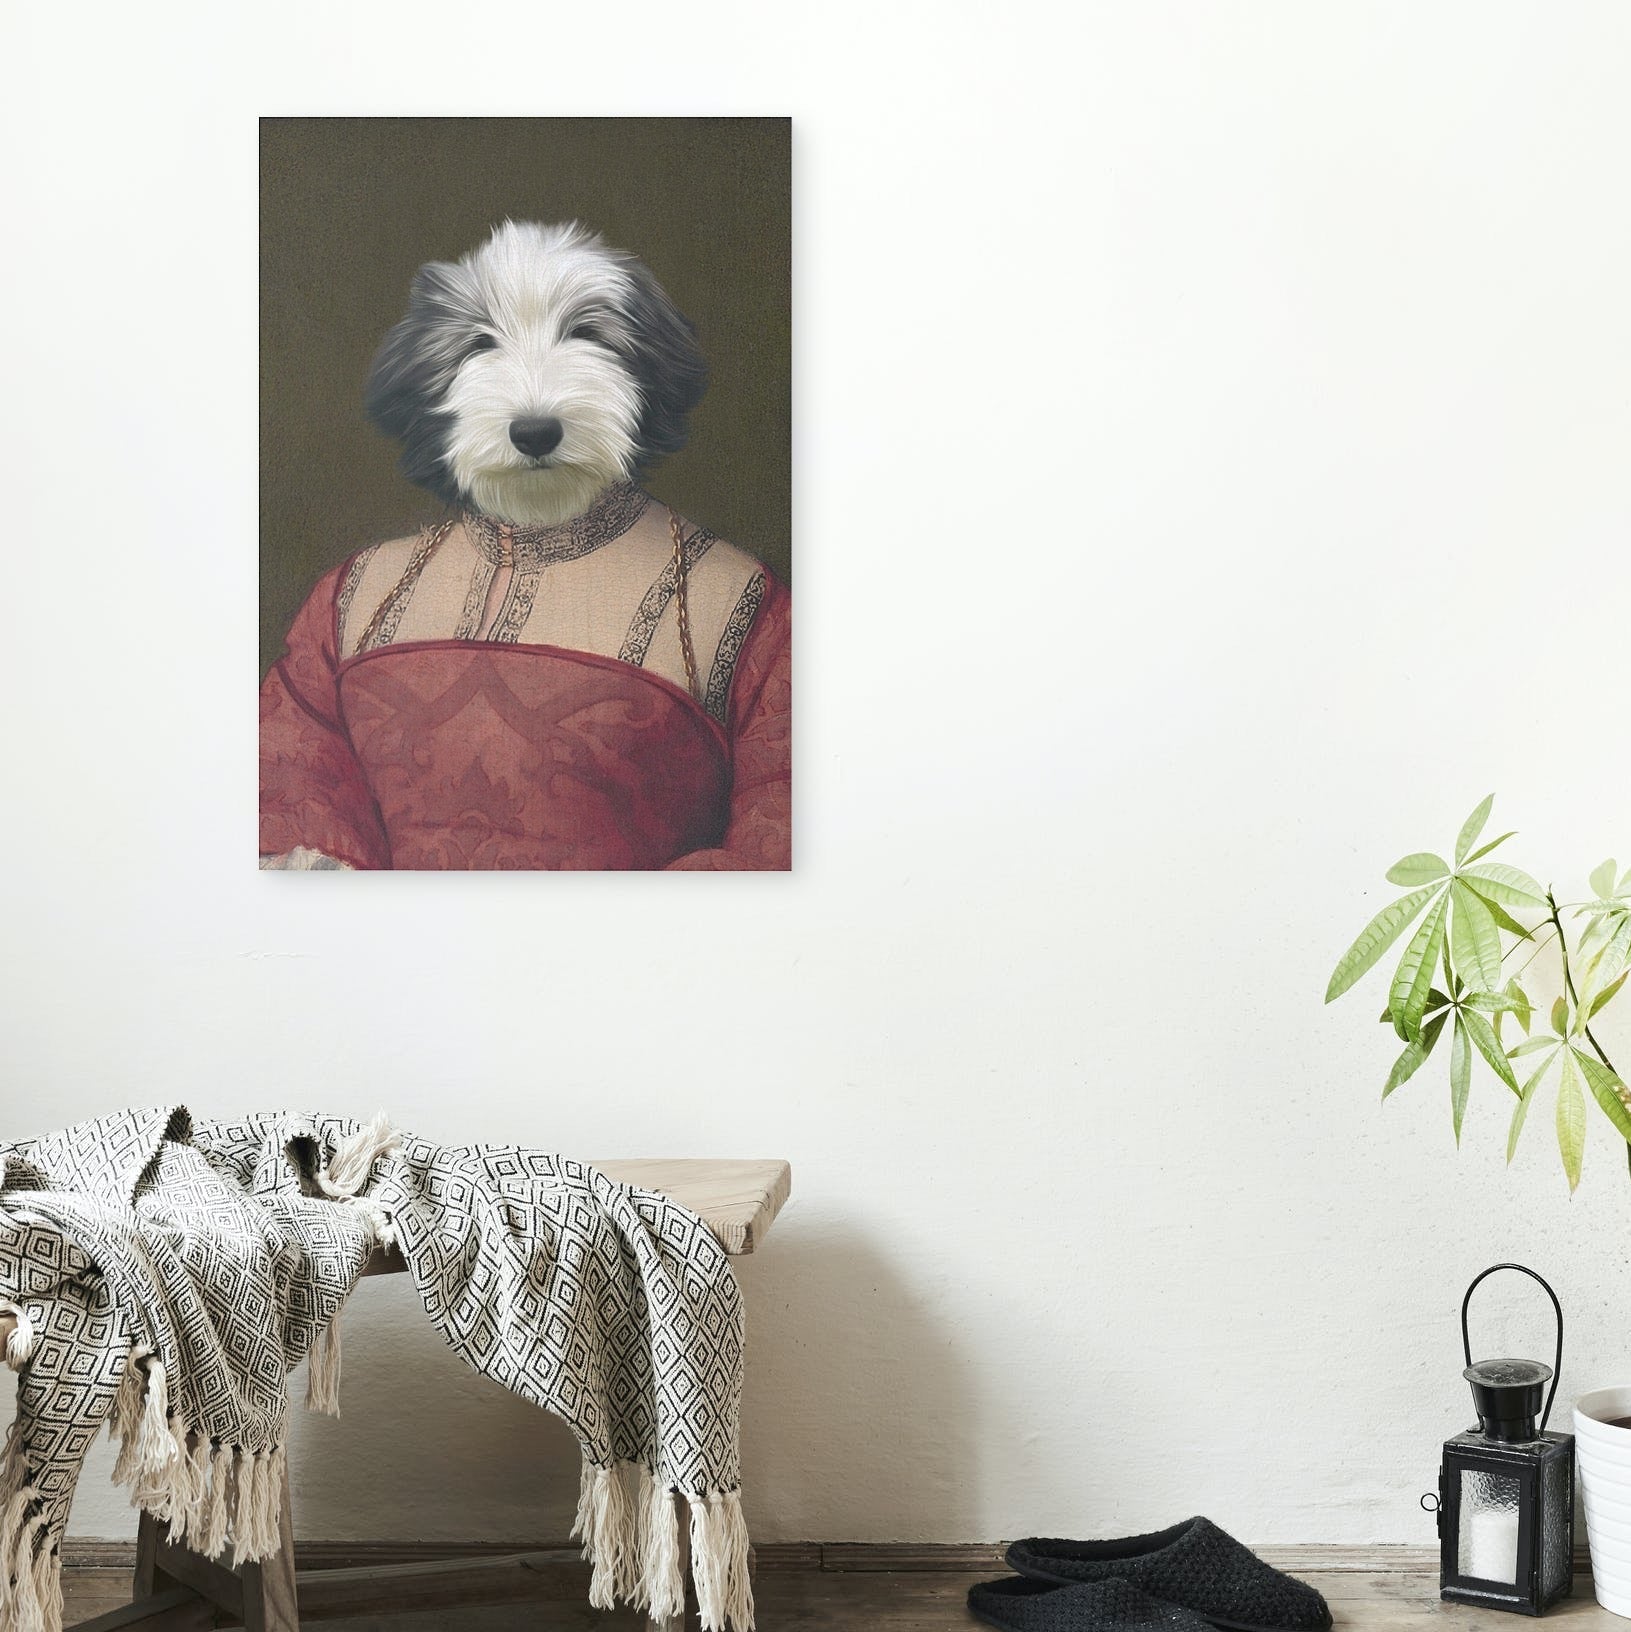 Dutch - Unique Canvas Of Your Pet